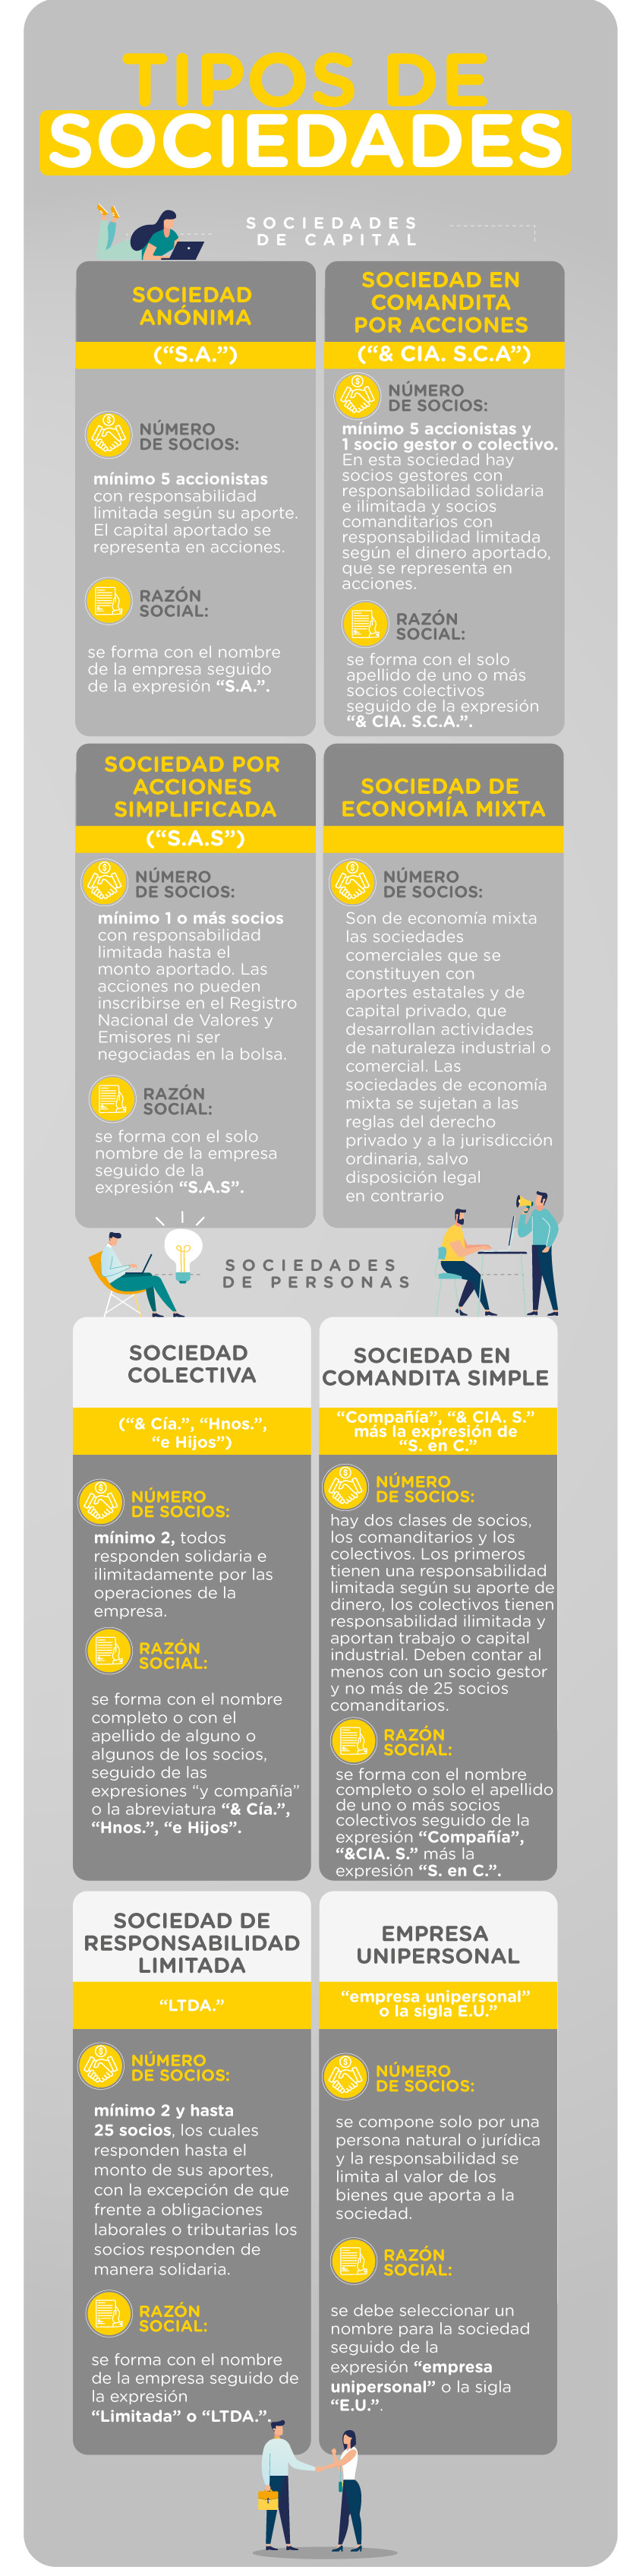 Infografía sobre los tipos de sociedades comerciales en Colombia